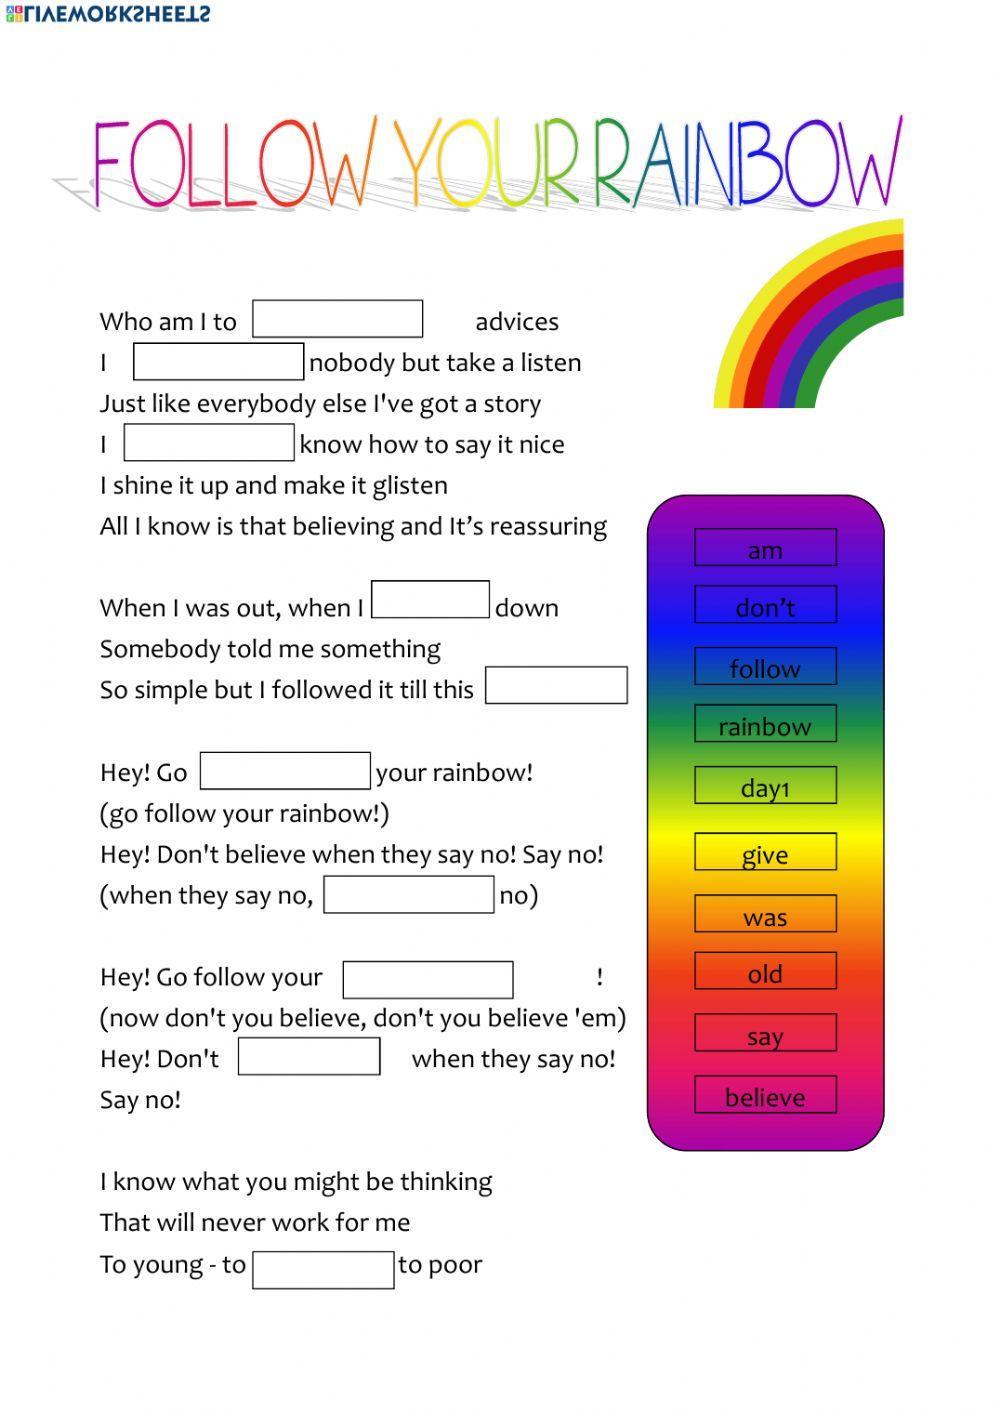 Follow your rainbow song